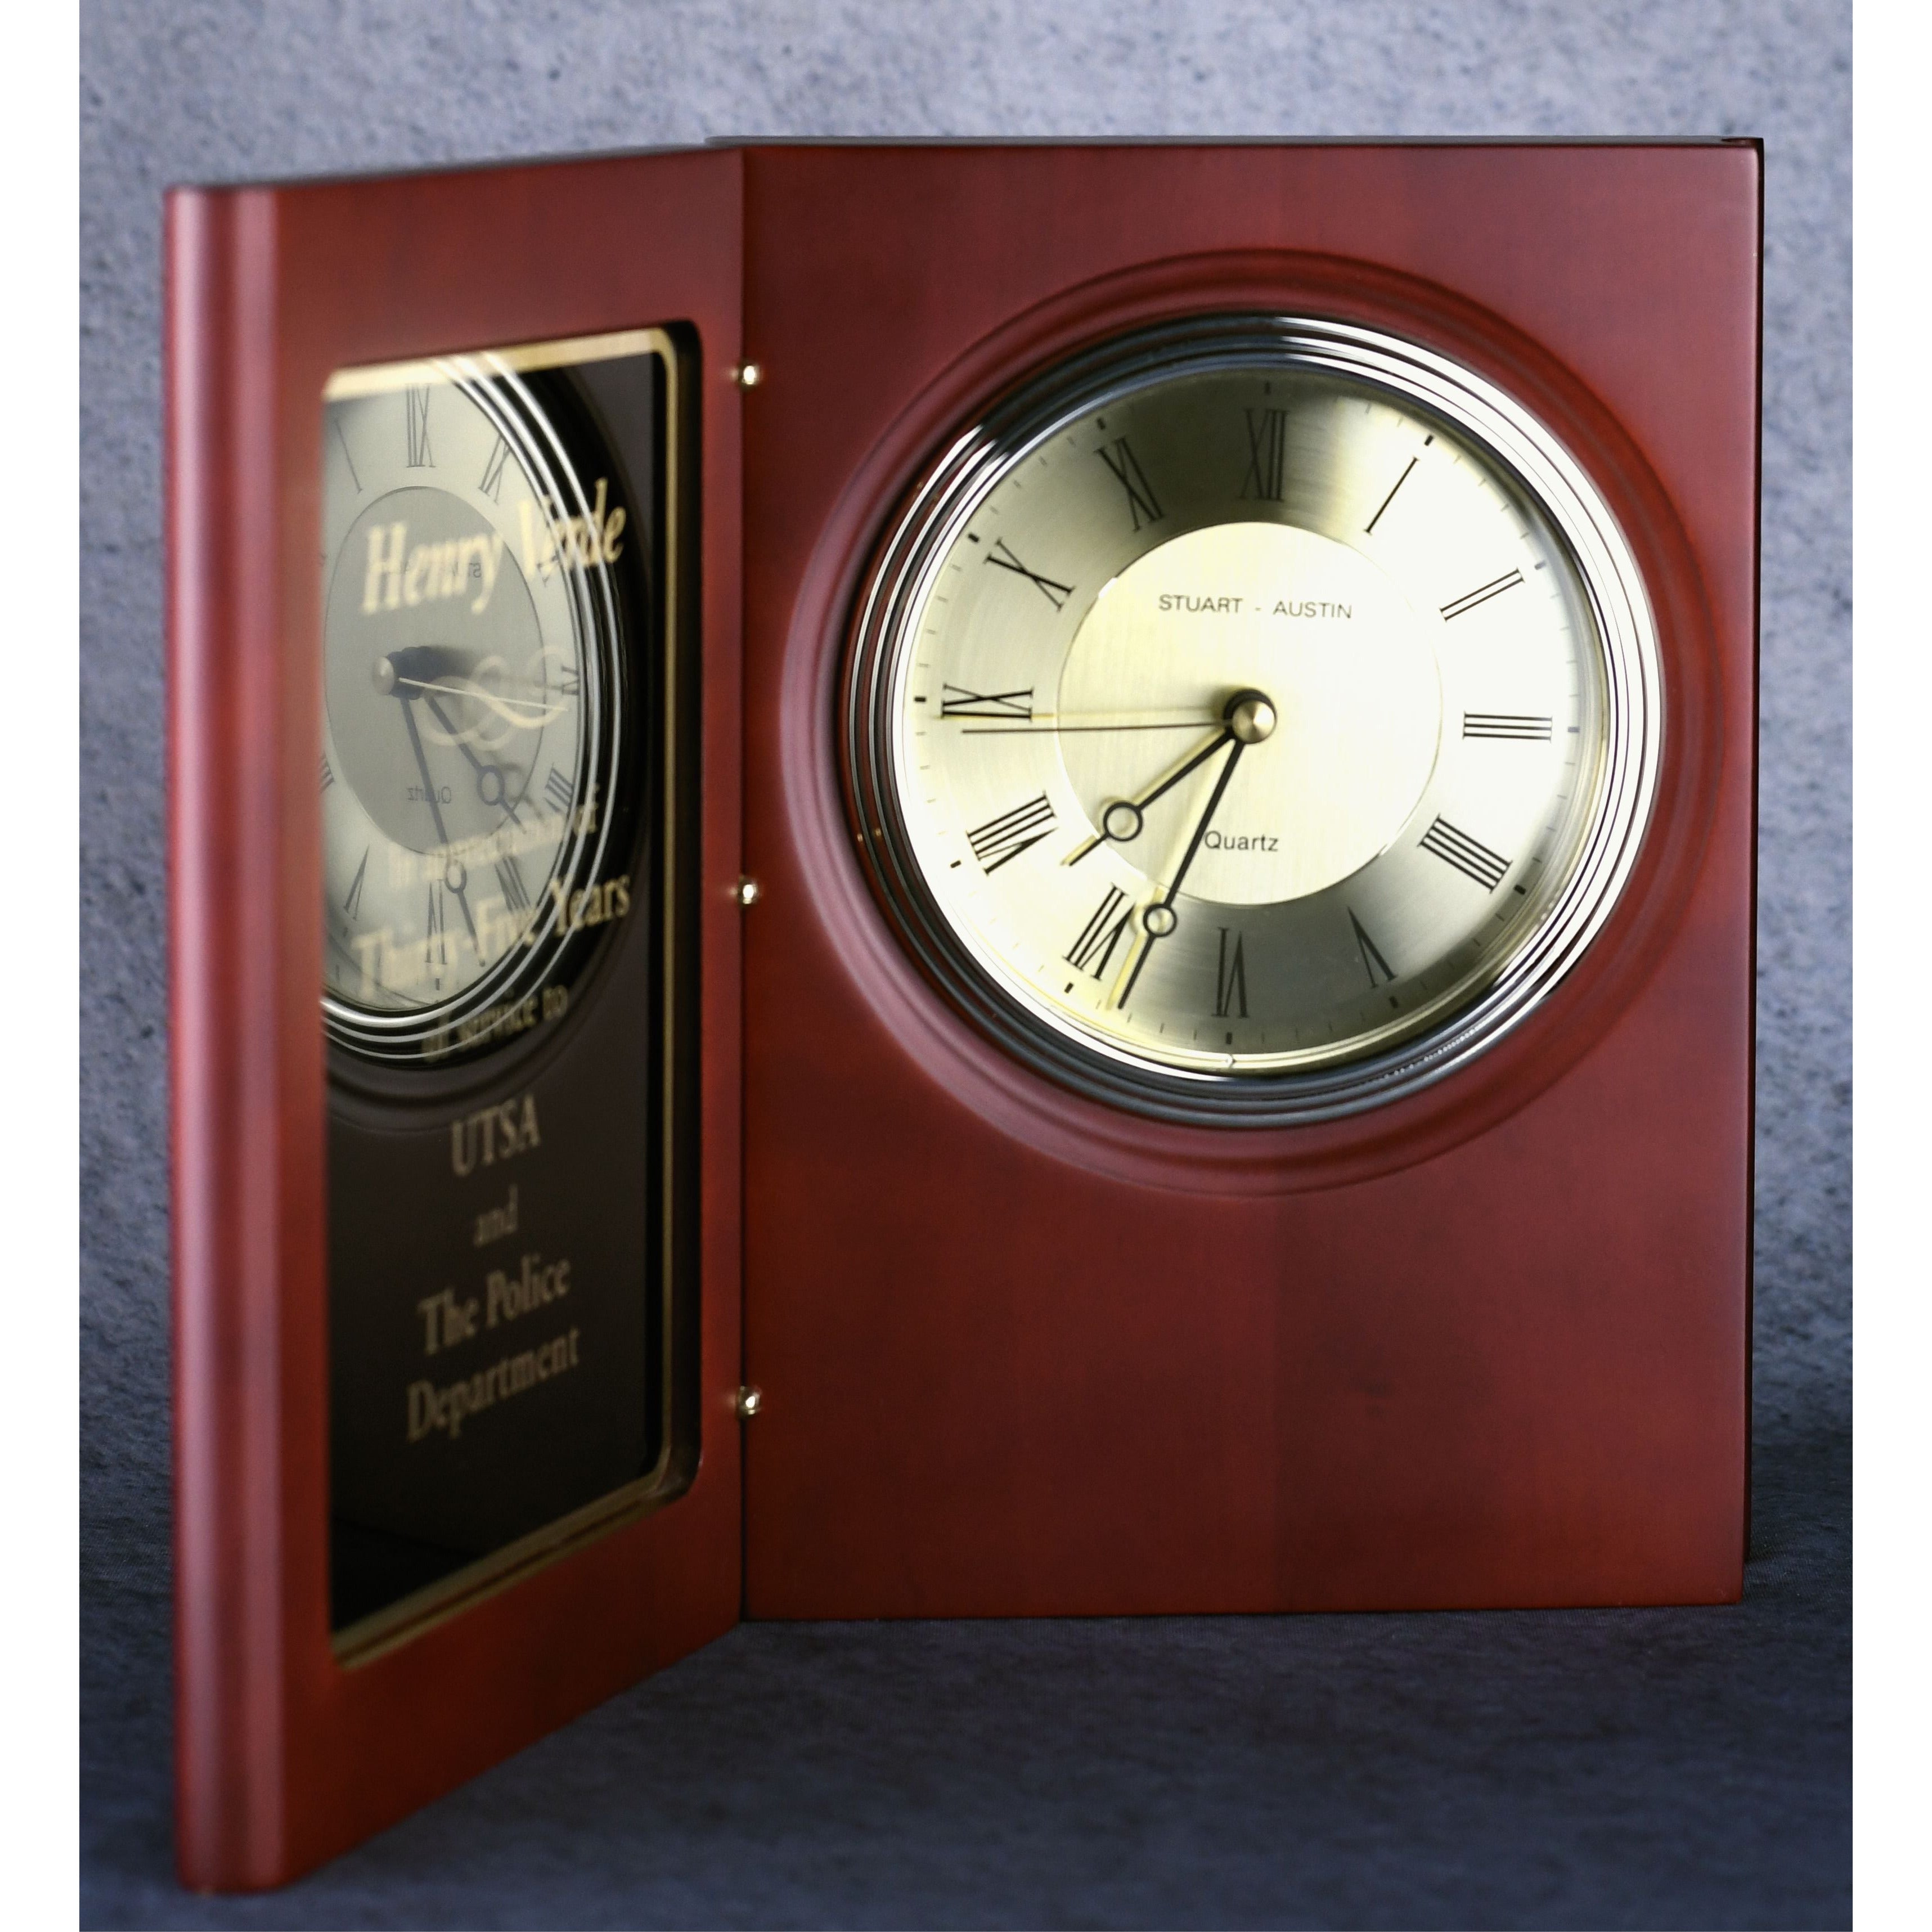 Rosewood Book Clock